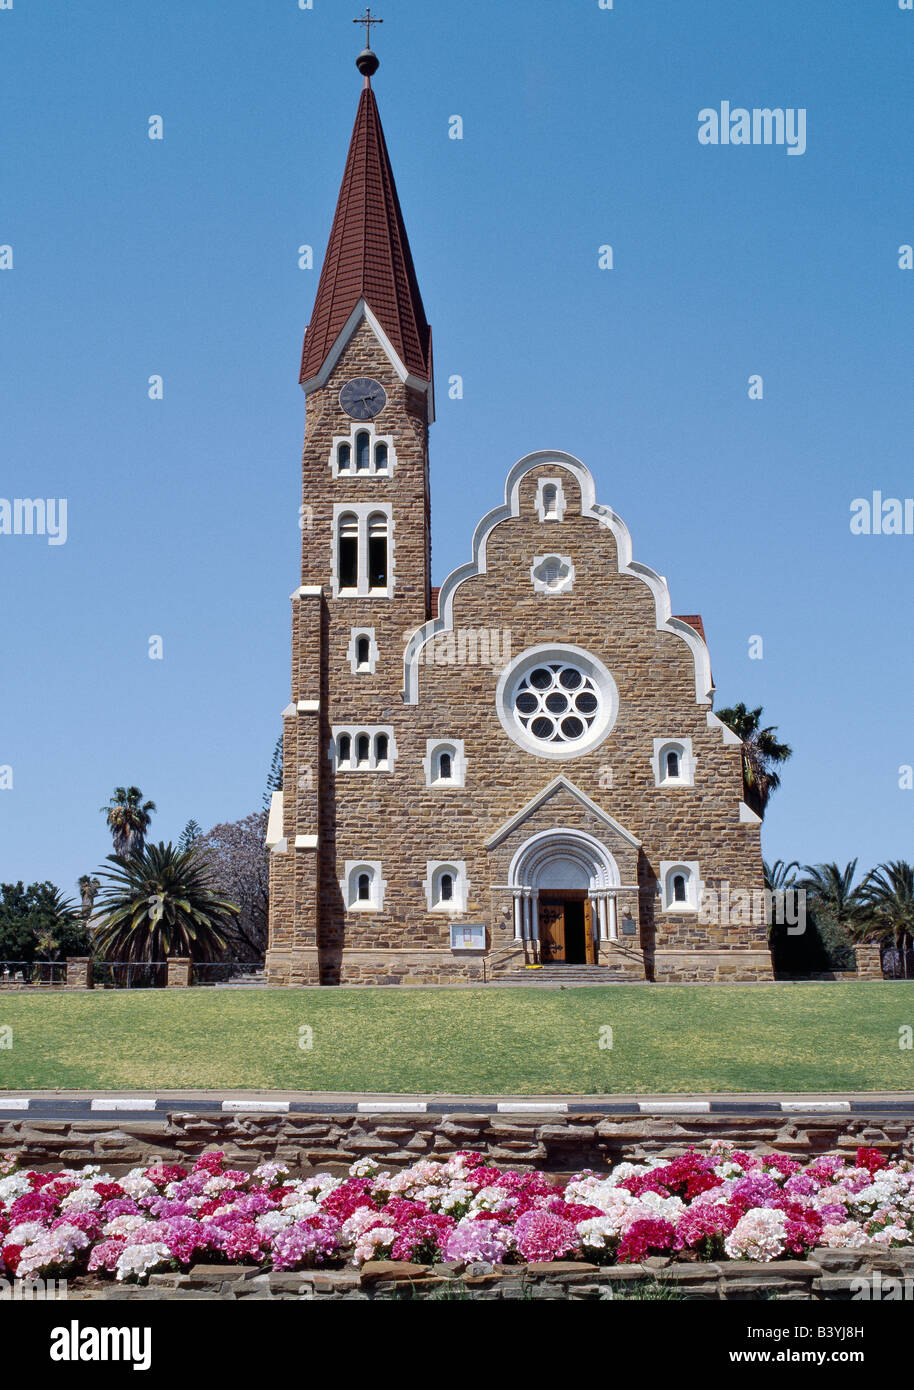 Namibia Windhoek, Windhoek. La Comunità luterana Christuskirche è uno di Windhoek's best-riconosciuti punti di riferimento. È stato costruito nel 1907 dalla pietra arenaria locale sotto la supervisione dell'architetto tedesco Gottlieb Redecker in stile neo-gotico e stili Art Nouveau. Foto Stock